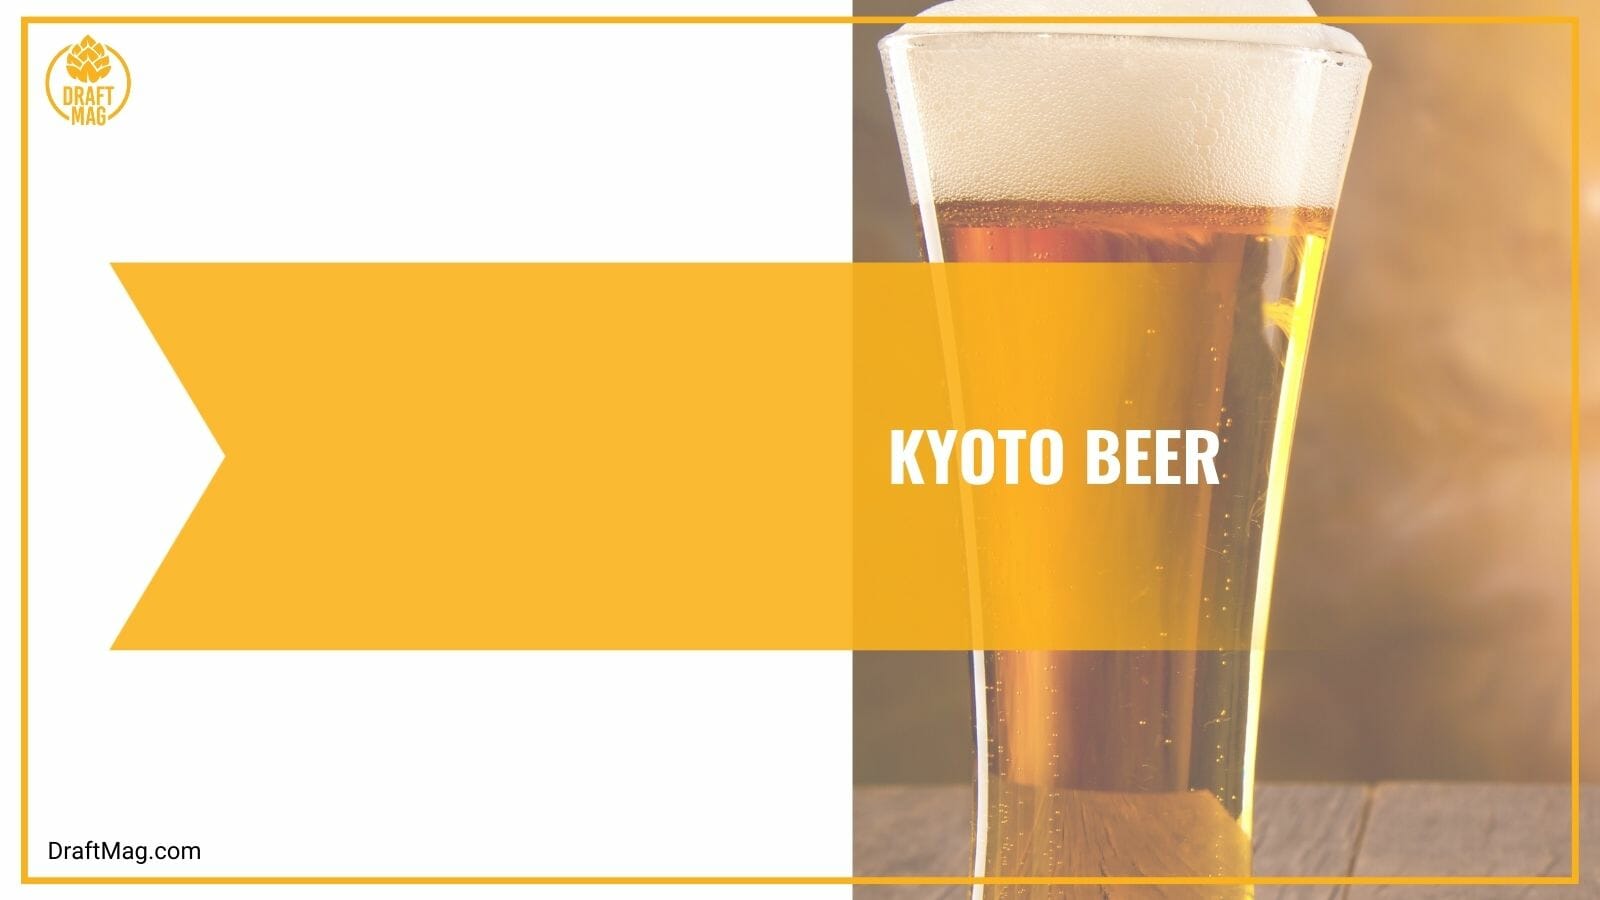 Kyoto Beer